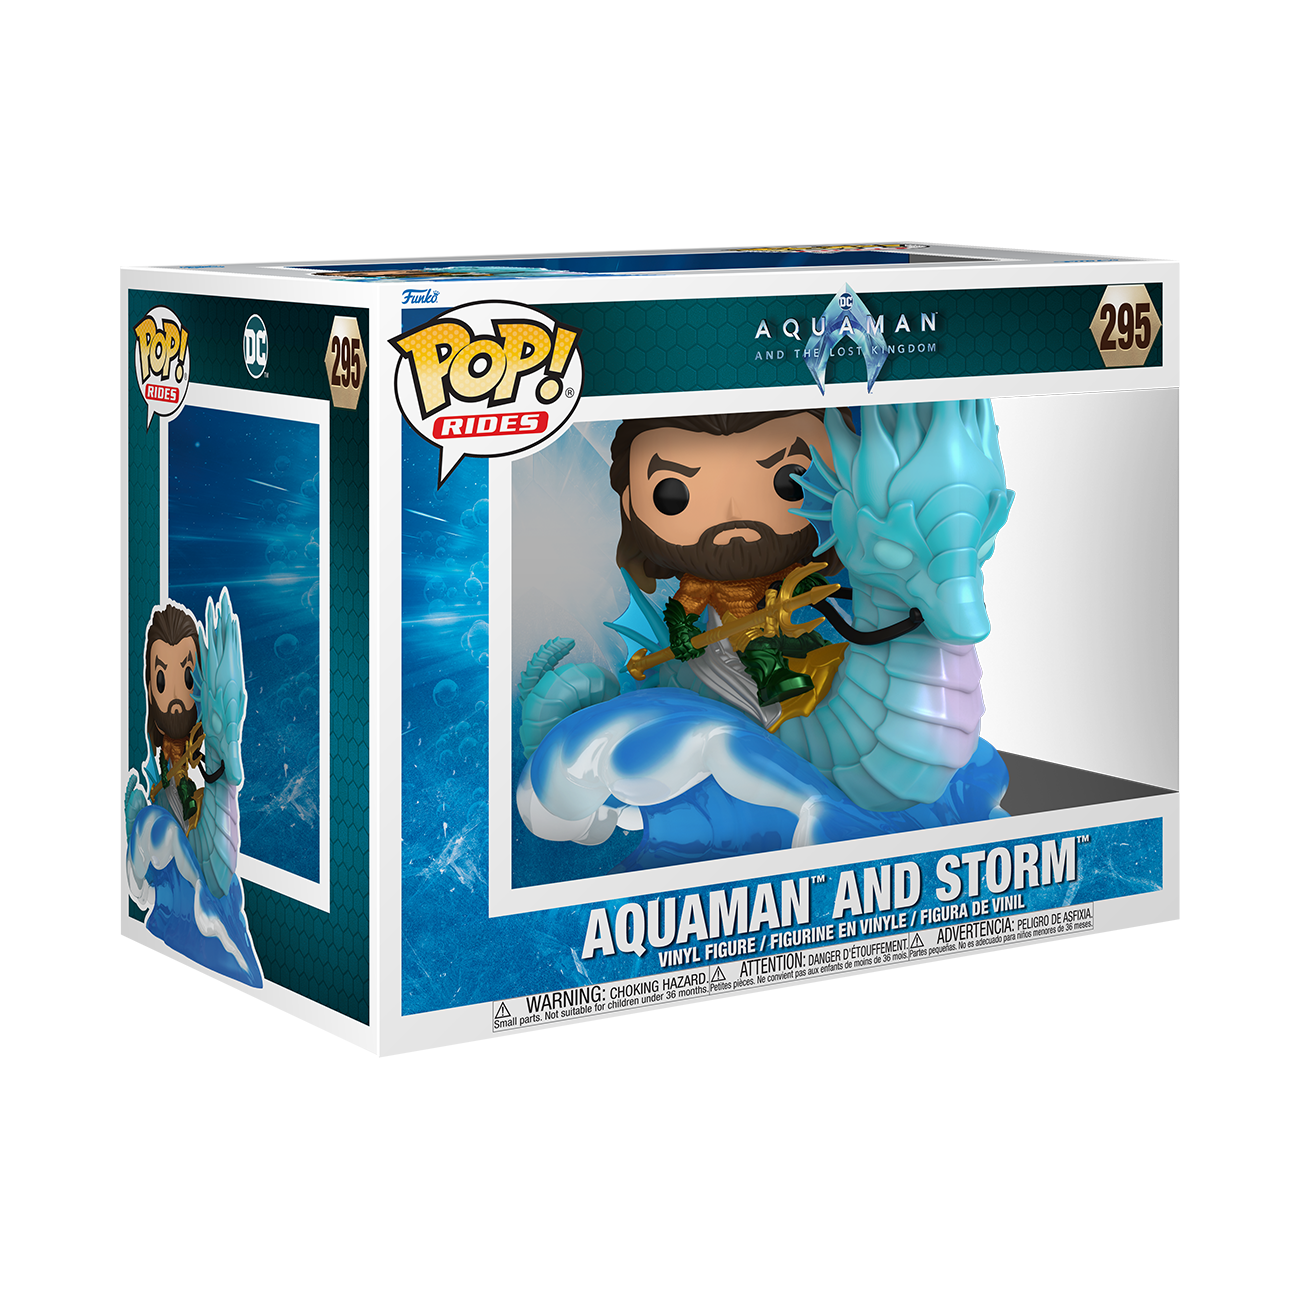 https://media.gamestop.com/i/gamestop/11205459_ALT01/Funko-POP-Deluxe-Rides-Aquaman-and-the-Lost-Kingdom-Aquaman-with-Storm-5.94-inch-Vinyl-Figure?$pdp$